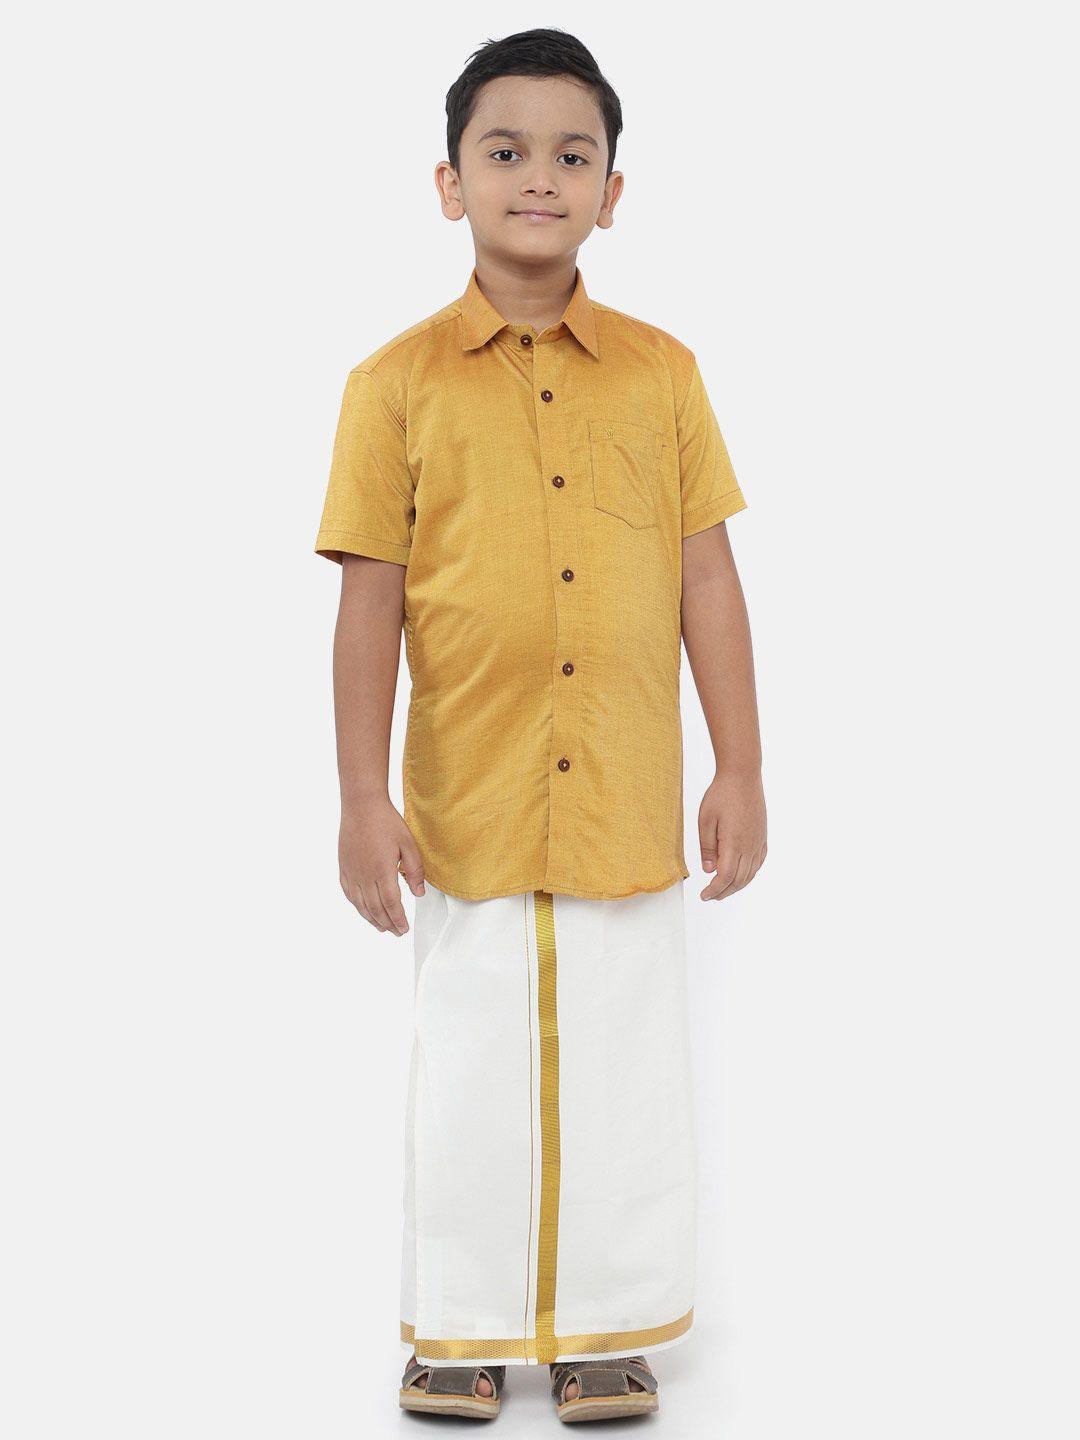 ramraj-boys-gold-toned-&-white-clothing-set